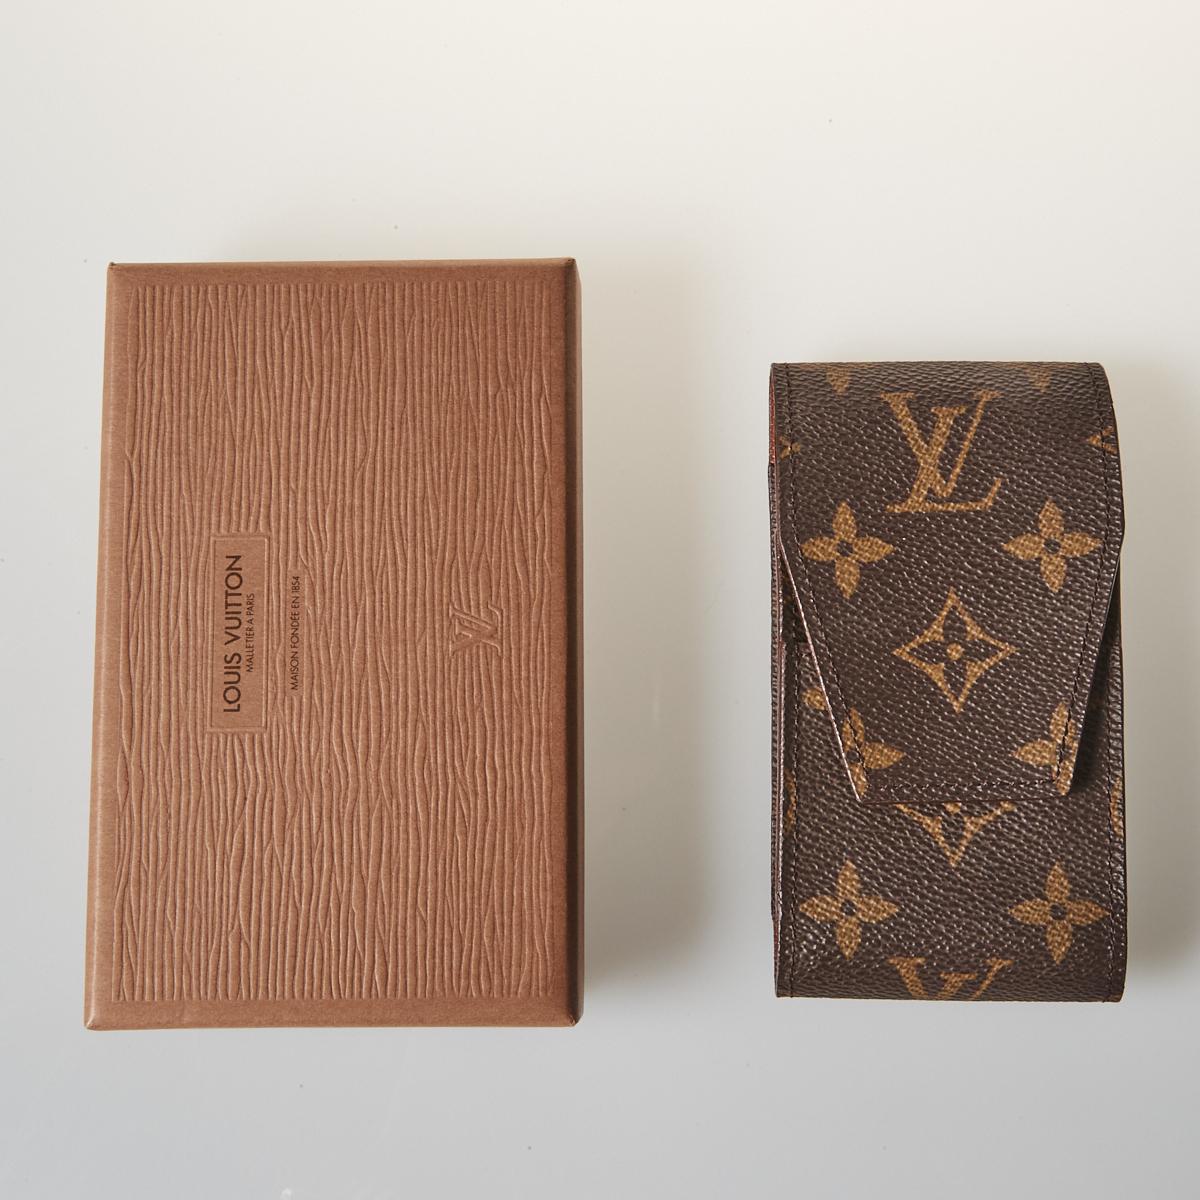 Sold at Auction: Louis Vuitton, Louis Vuitton S/S 19 Monogram